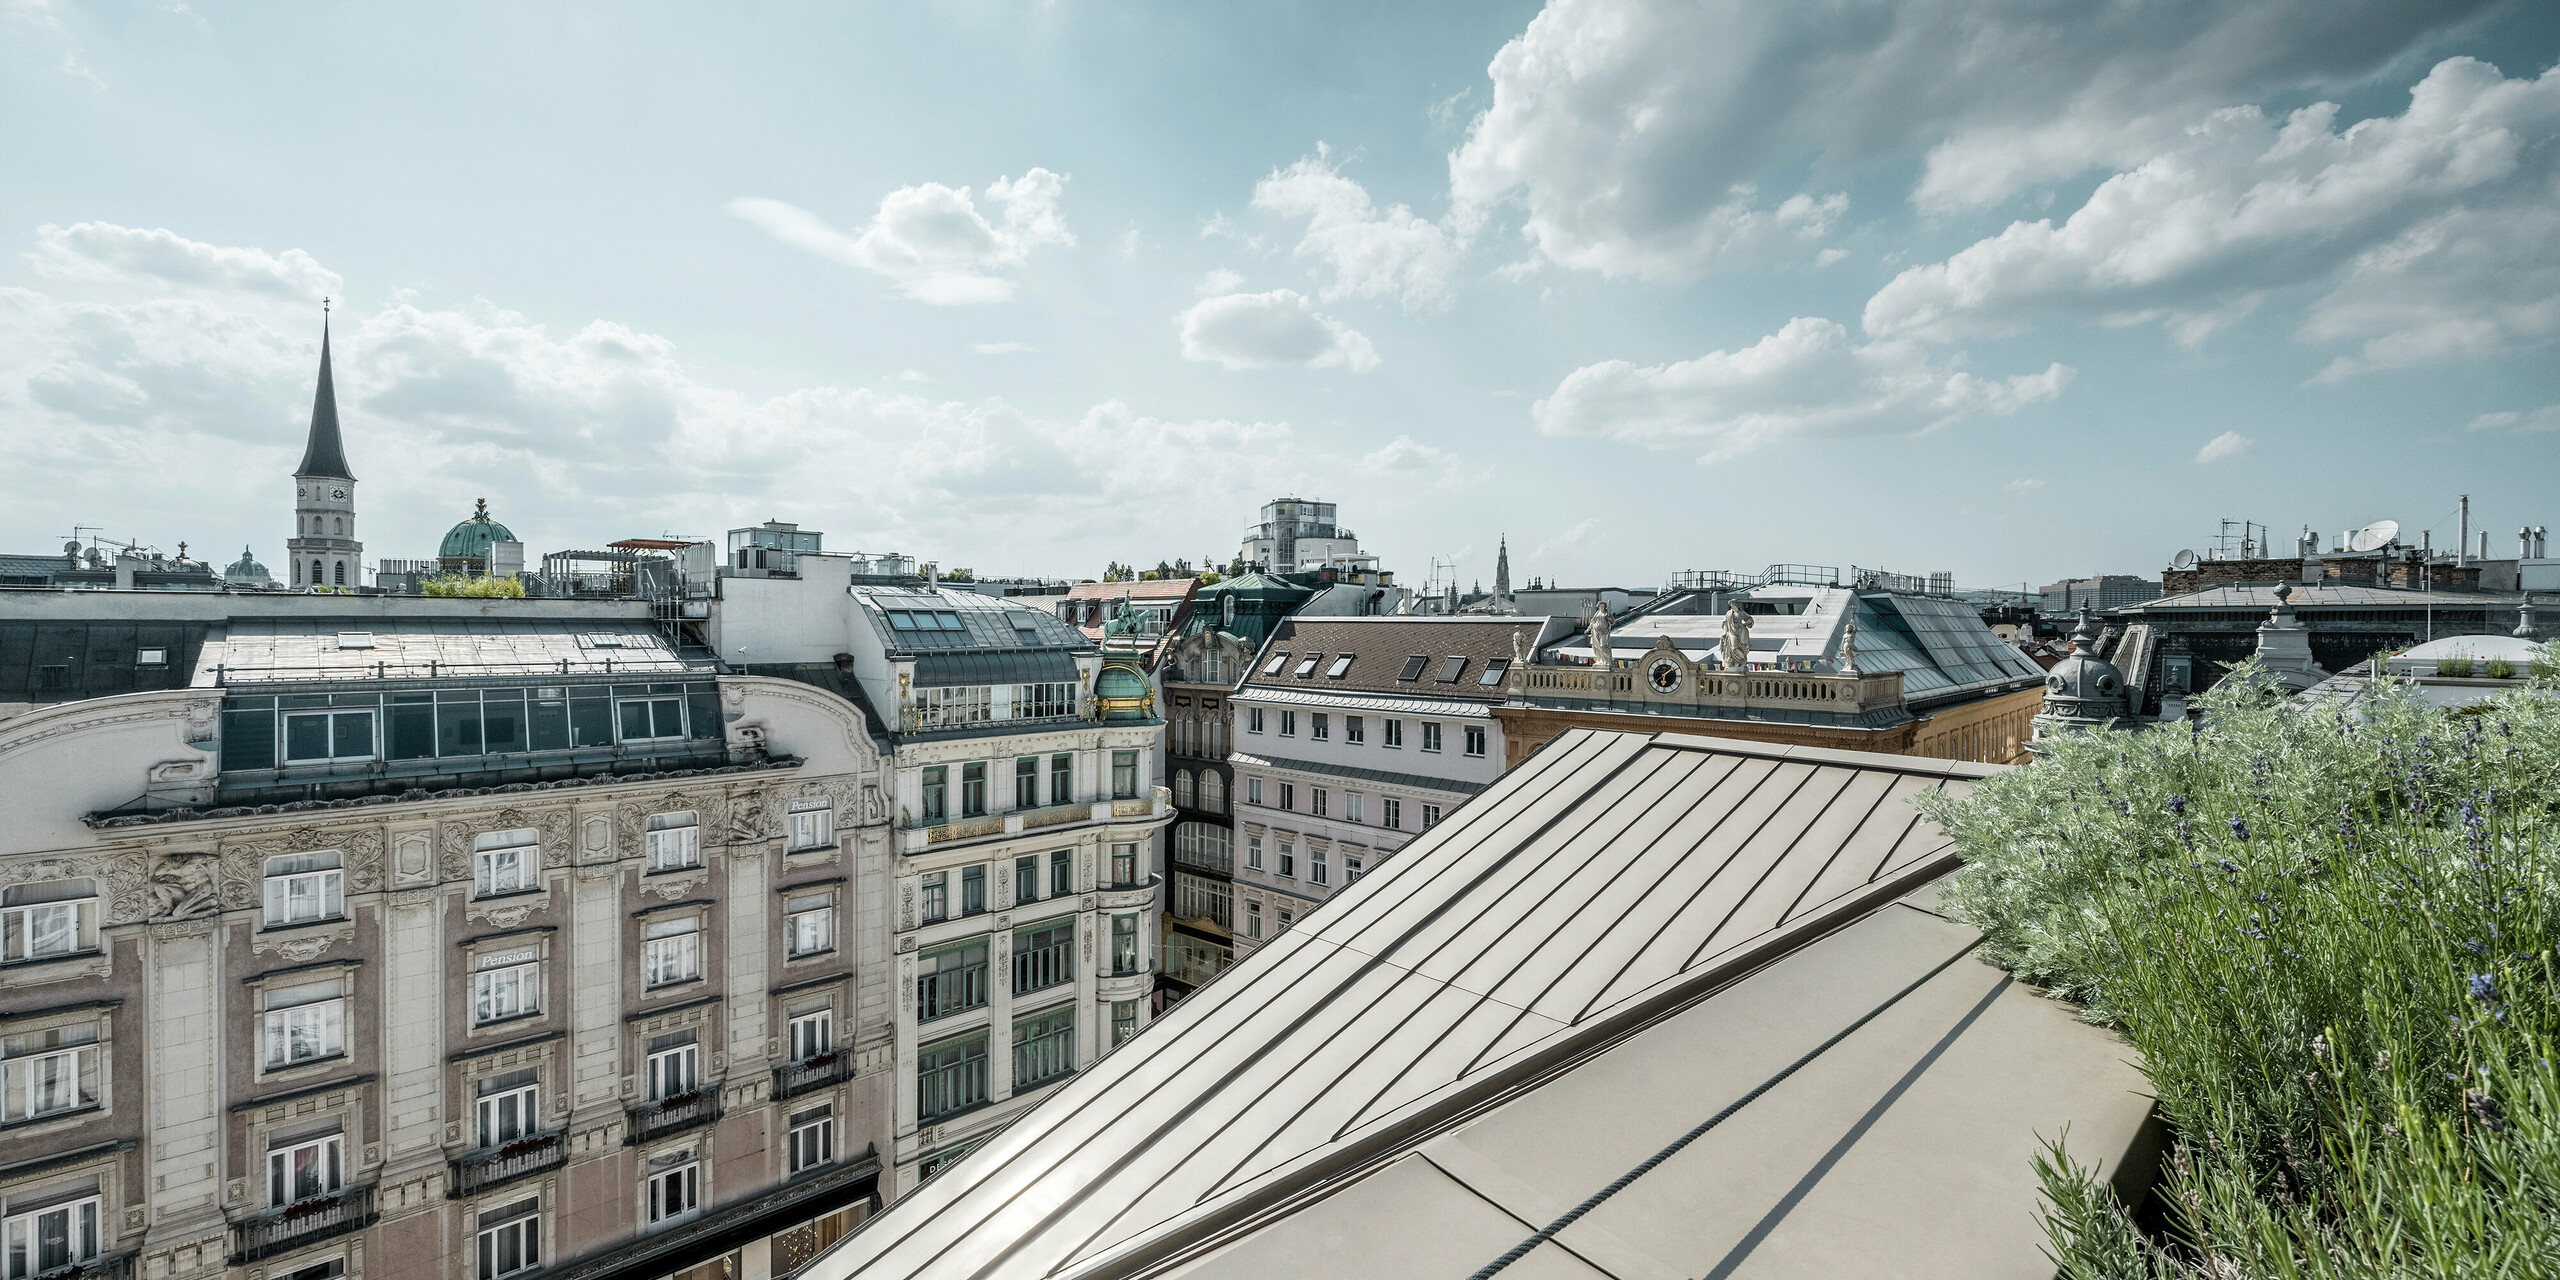 Weiter Blick auf die Dächer von Wien, rechts im Bild sind Prefalz-Bahnen ersichtlich, daneben eine Begrünung.